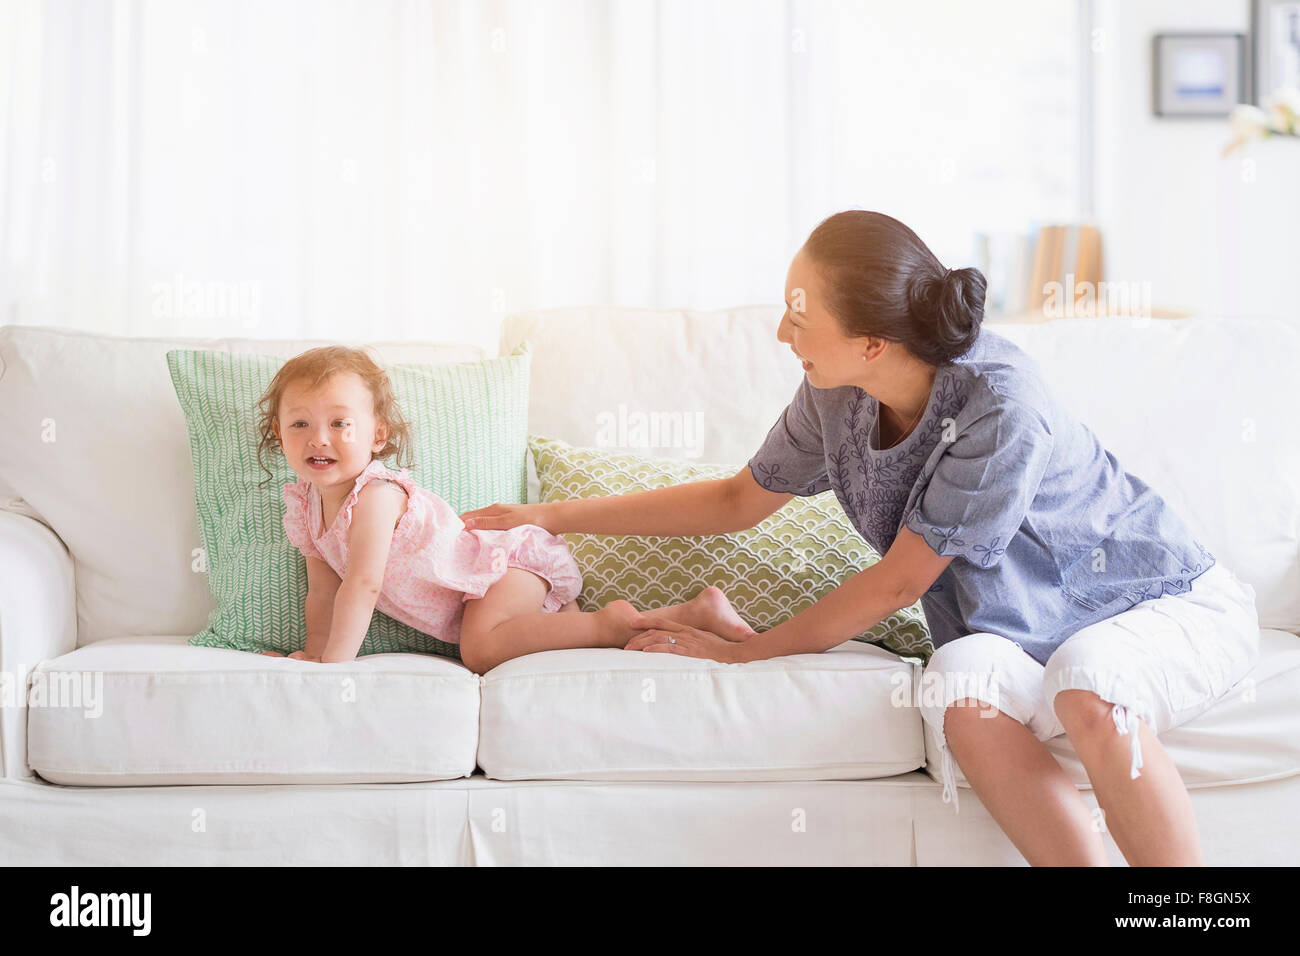 Mutter und Baby Tochter spielen auf sofa Stockfoto